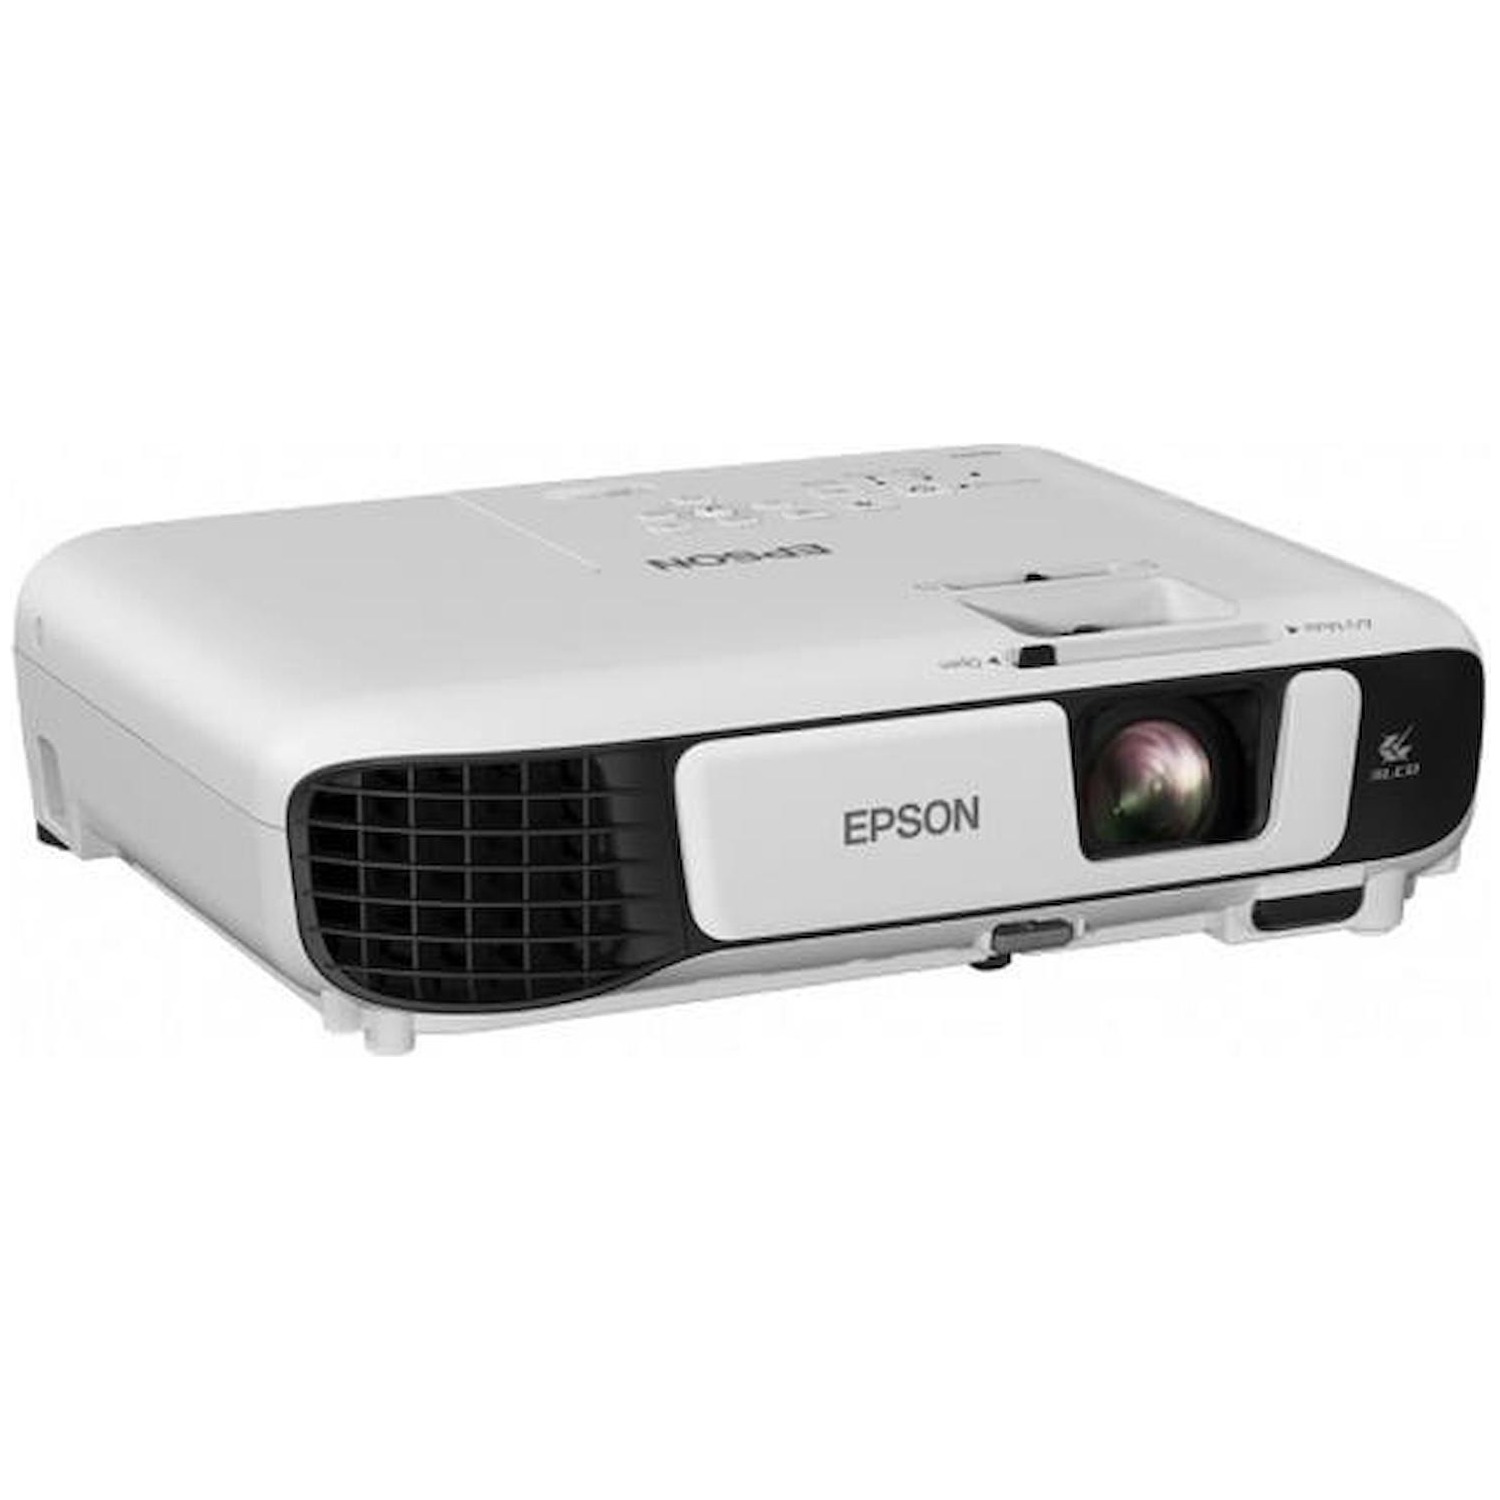 Immagine per Videoproiettore Epson 3LCD XGA 3600 ANSI da DIMOStore